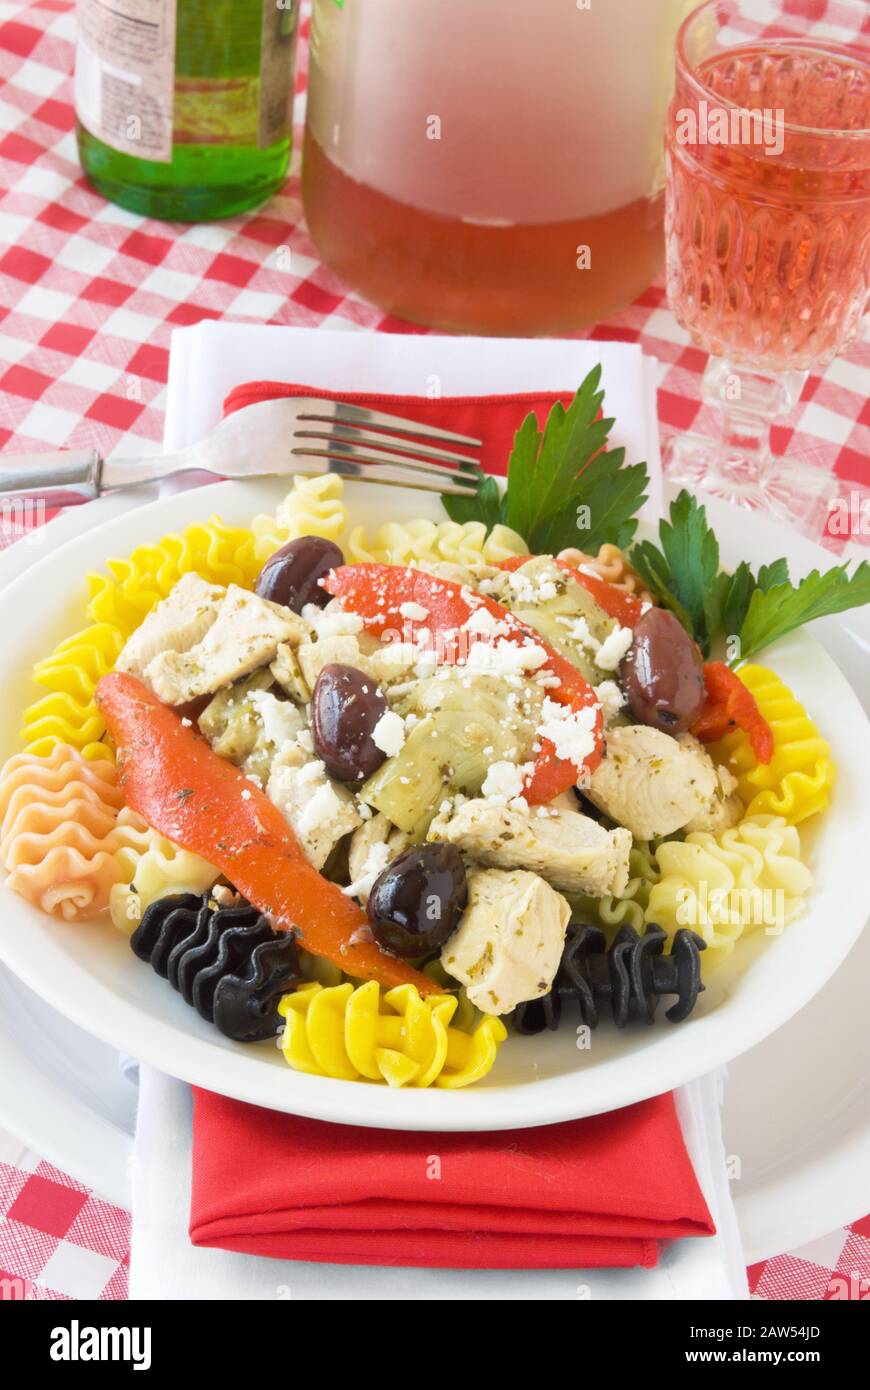 Cena di cucina italiana con pollo e pasta e cuori di carciofi. Condito con formaggio feta sbriciolato. Foto Stock